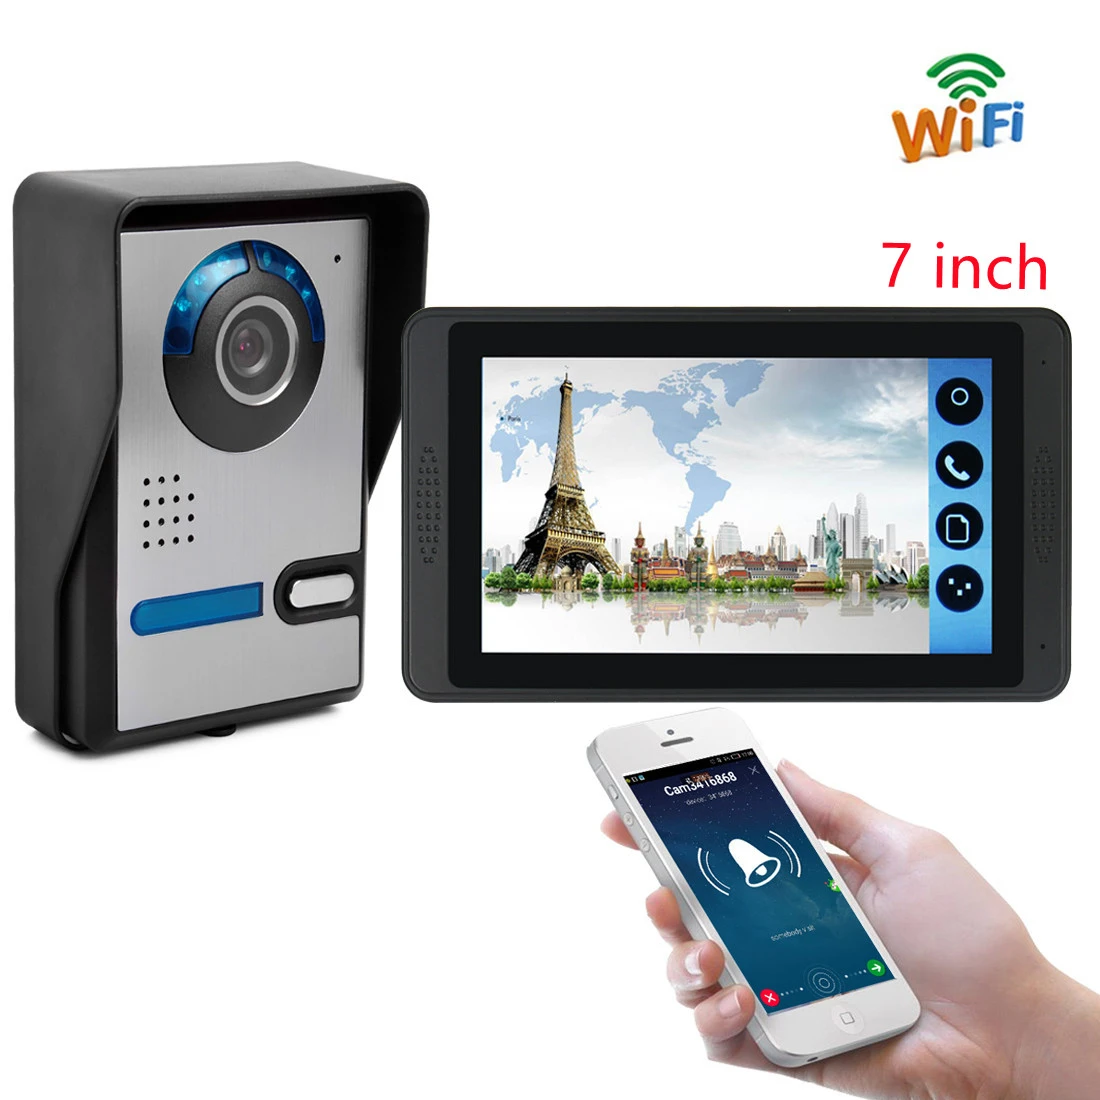 7 inch WiFi Video Intercom For Home Security Door Remote Unlock Camera Doorphone Touch Screen Wireless HD Screen Indoor Monitor video intercom system with door release